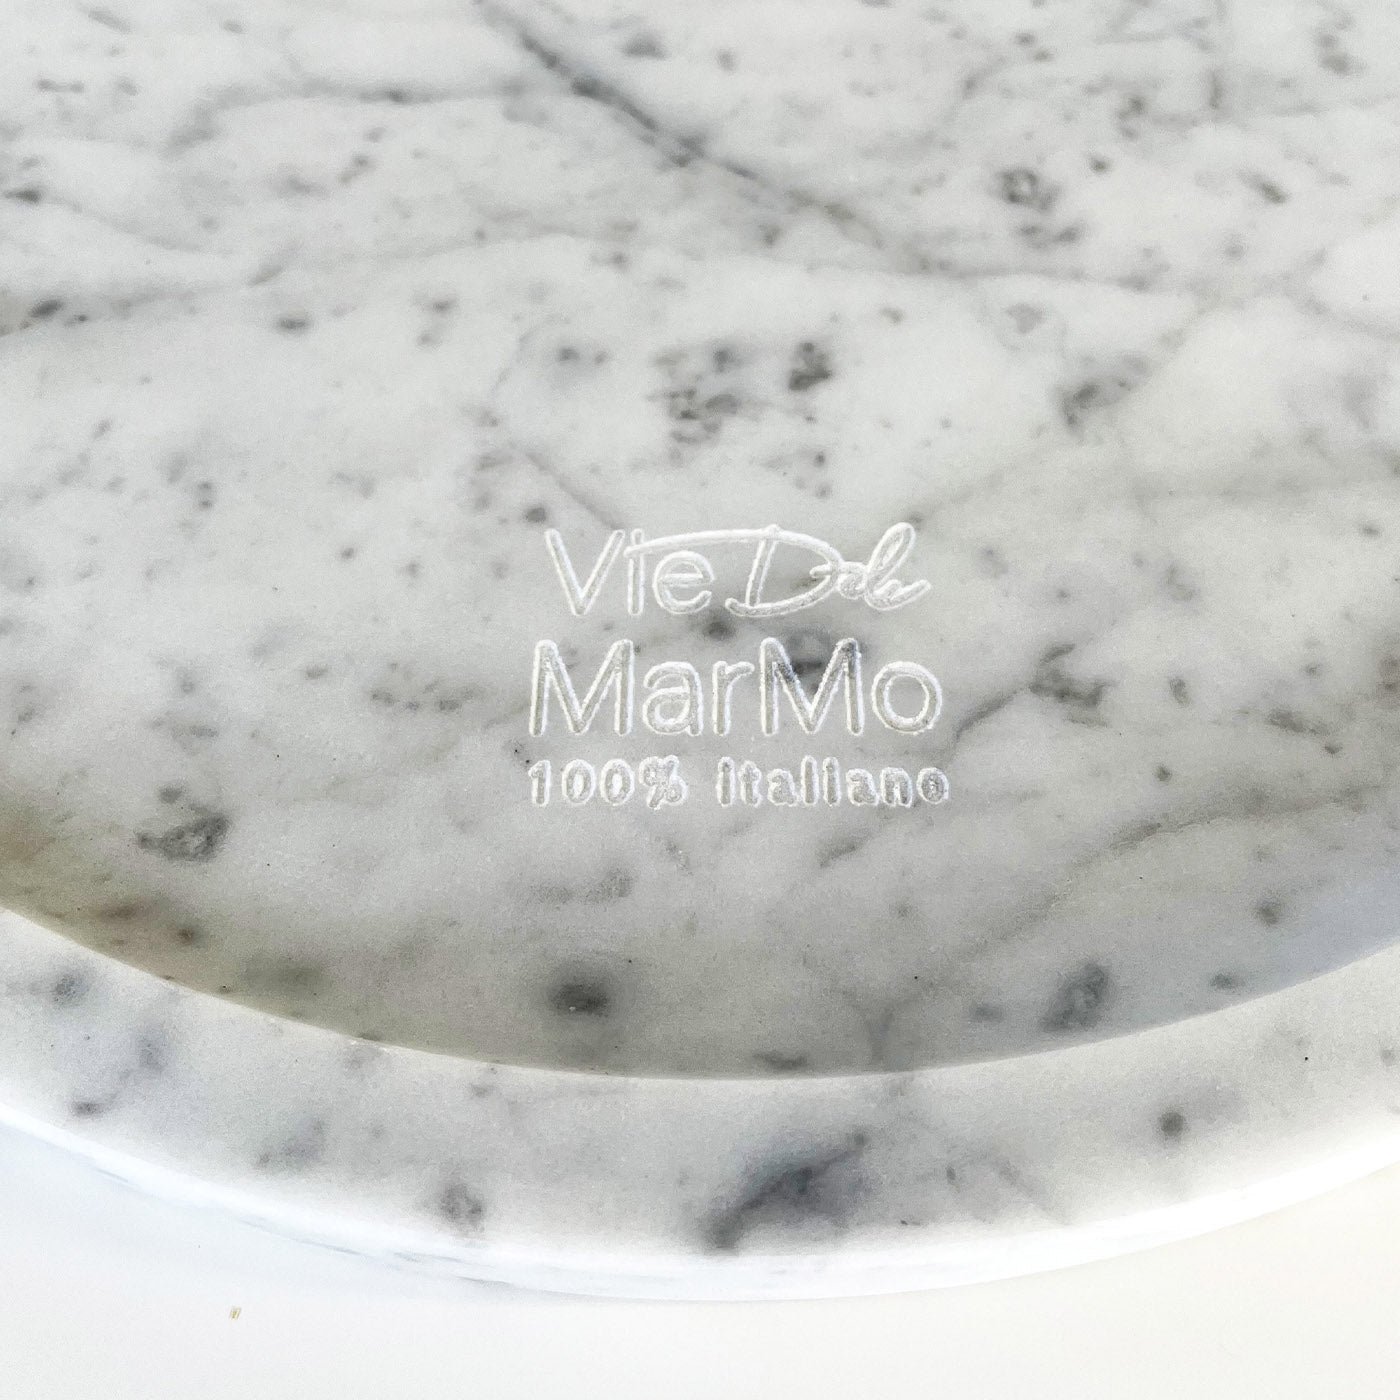 Cut Stone Round Carrara Cutting Board by M. Montanari - Alternative view 2